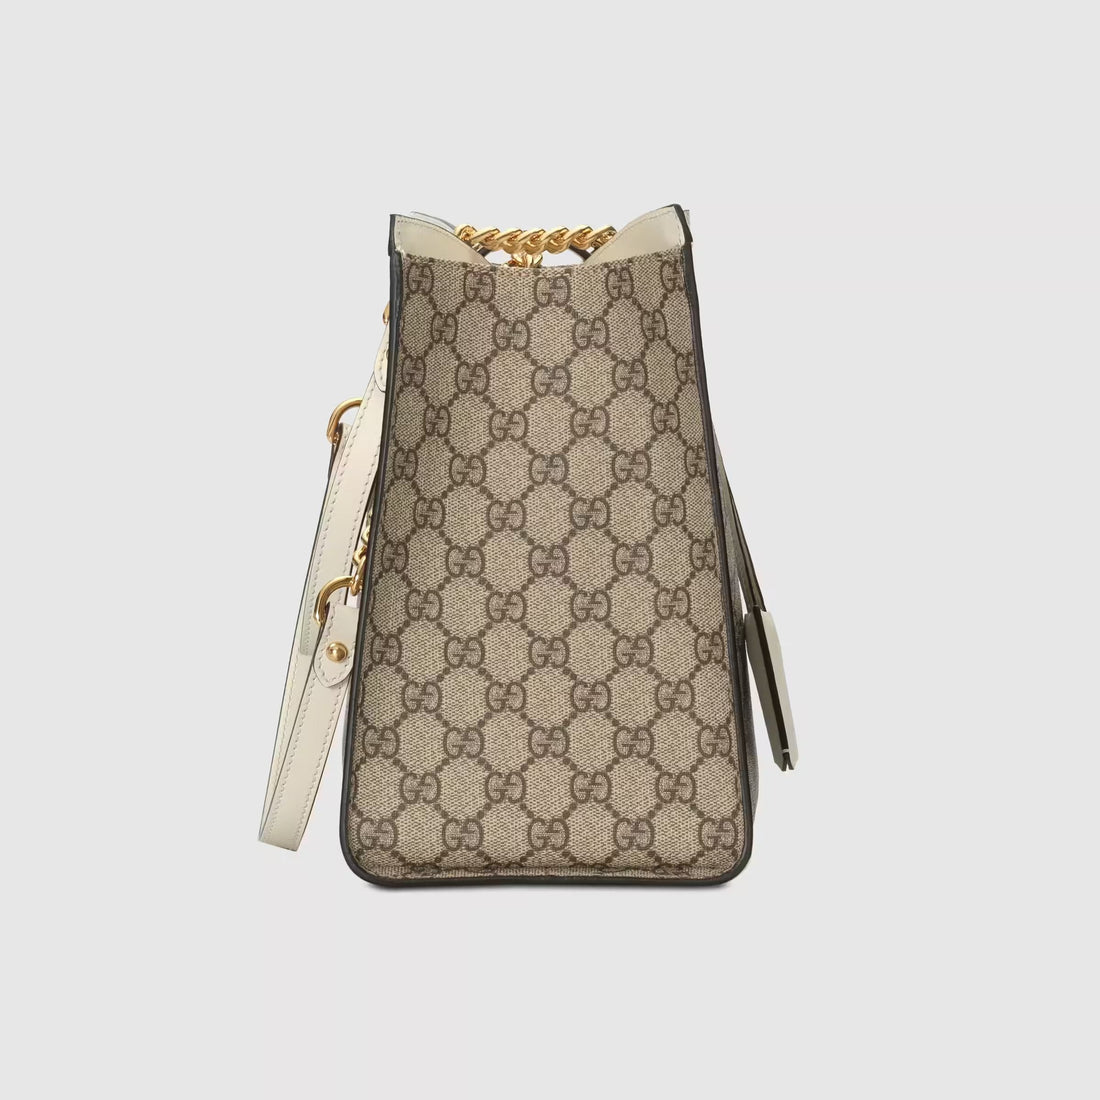 Gucci Sac à épaule Padlock GG taille moyenne - Paris Deluxe